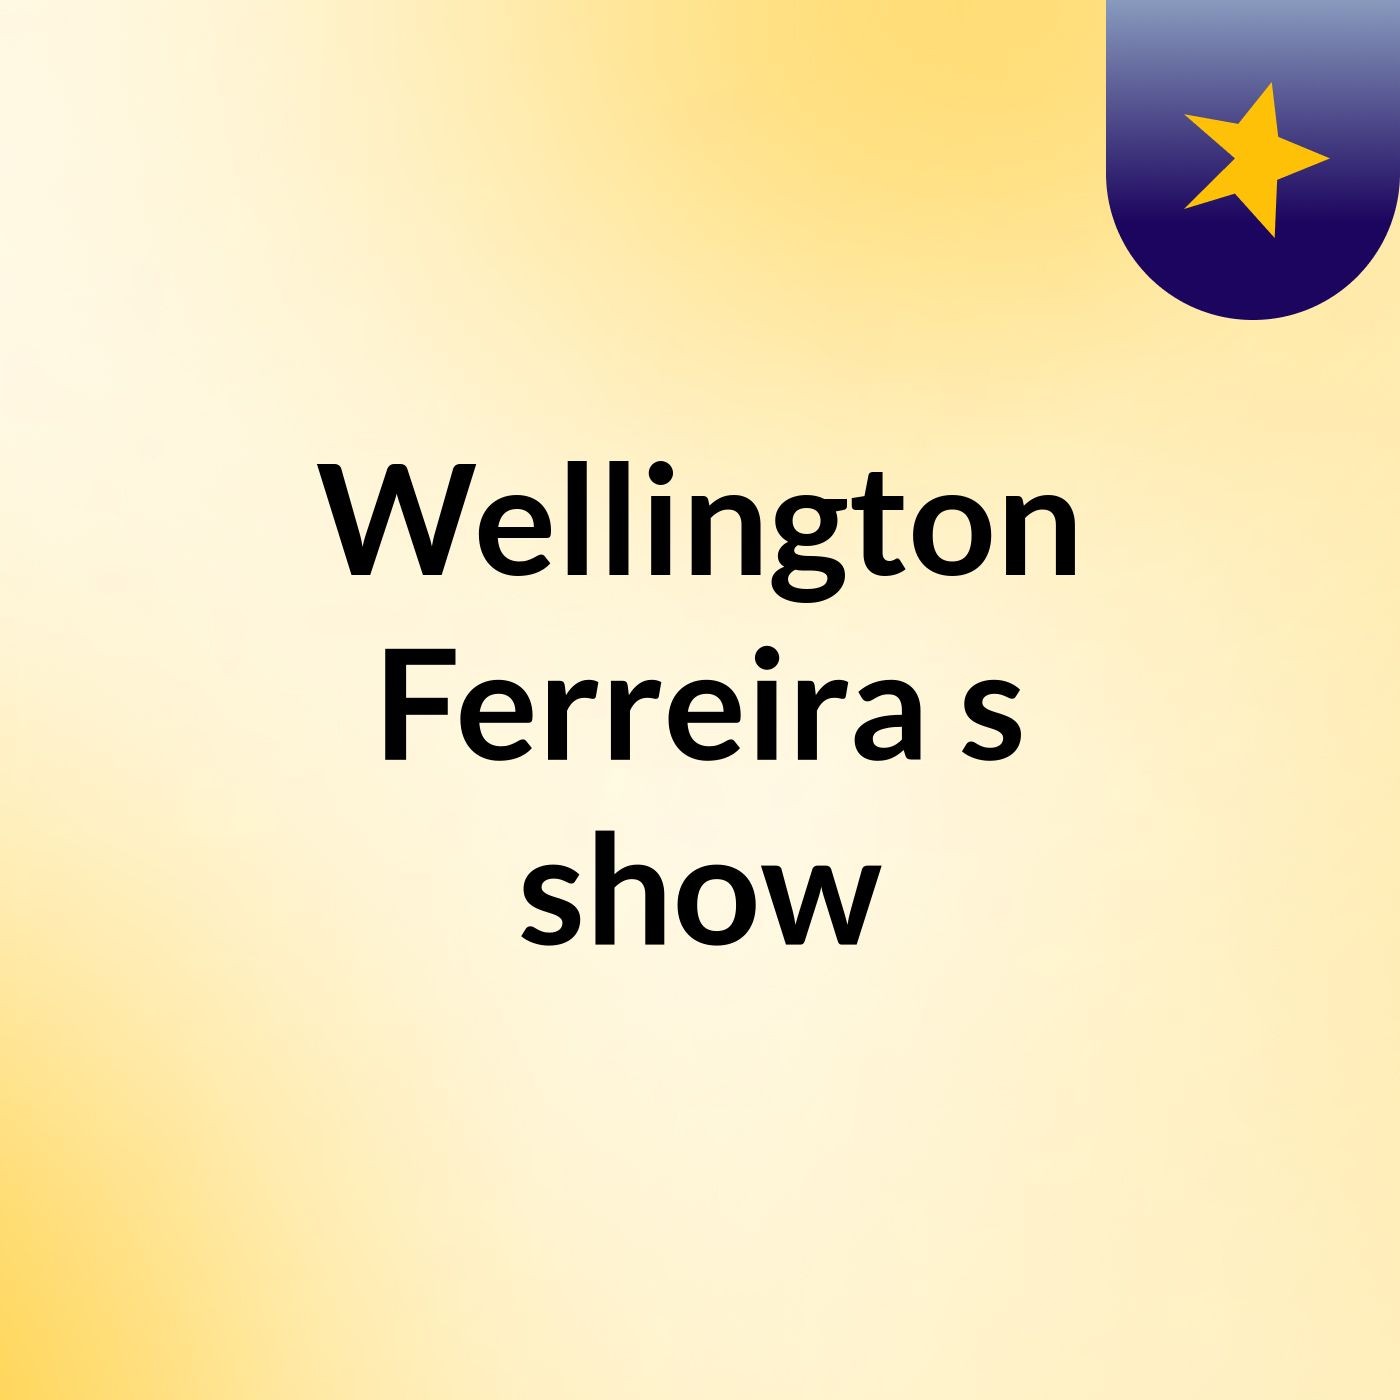 Wellington Ferreira's show